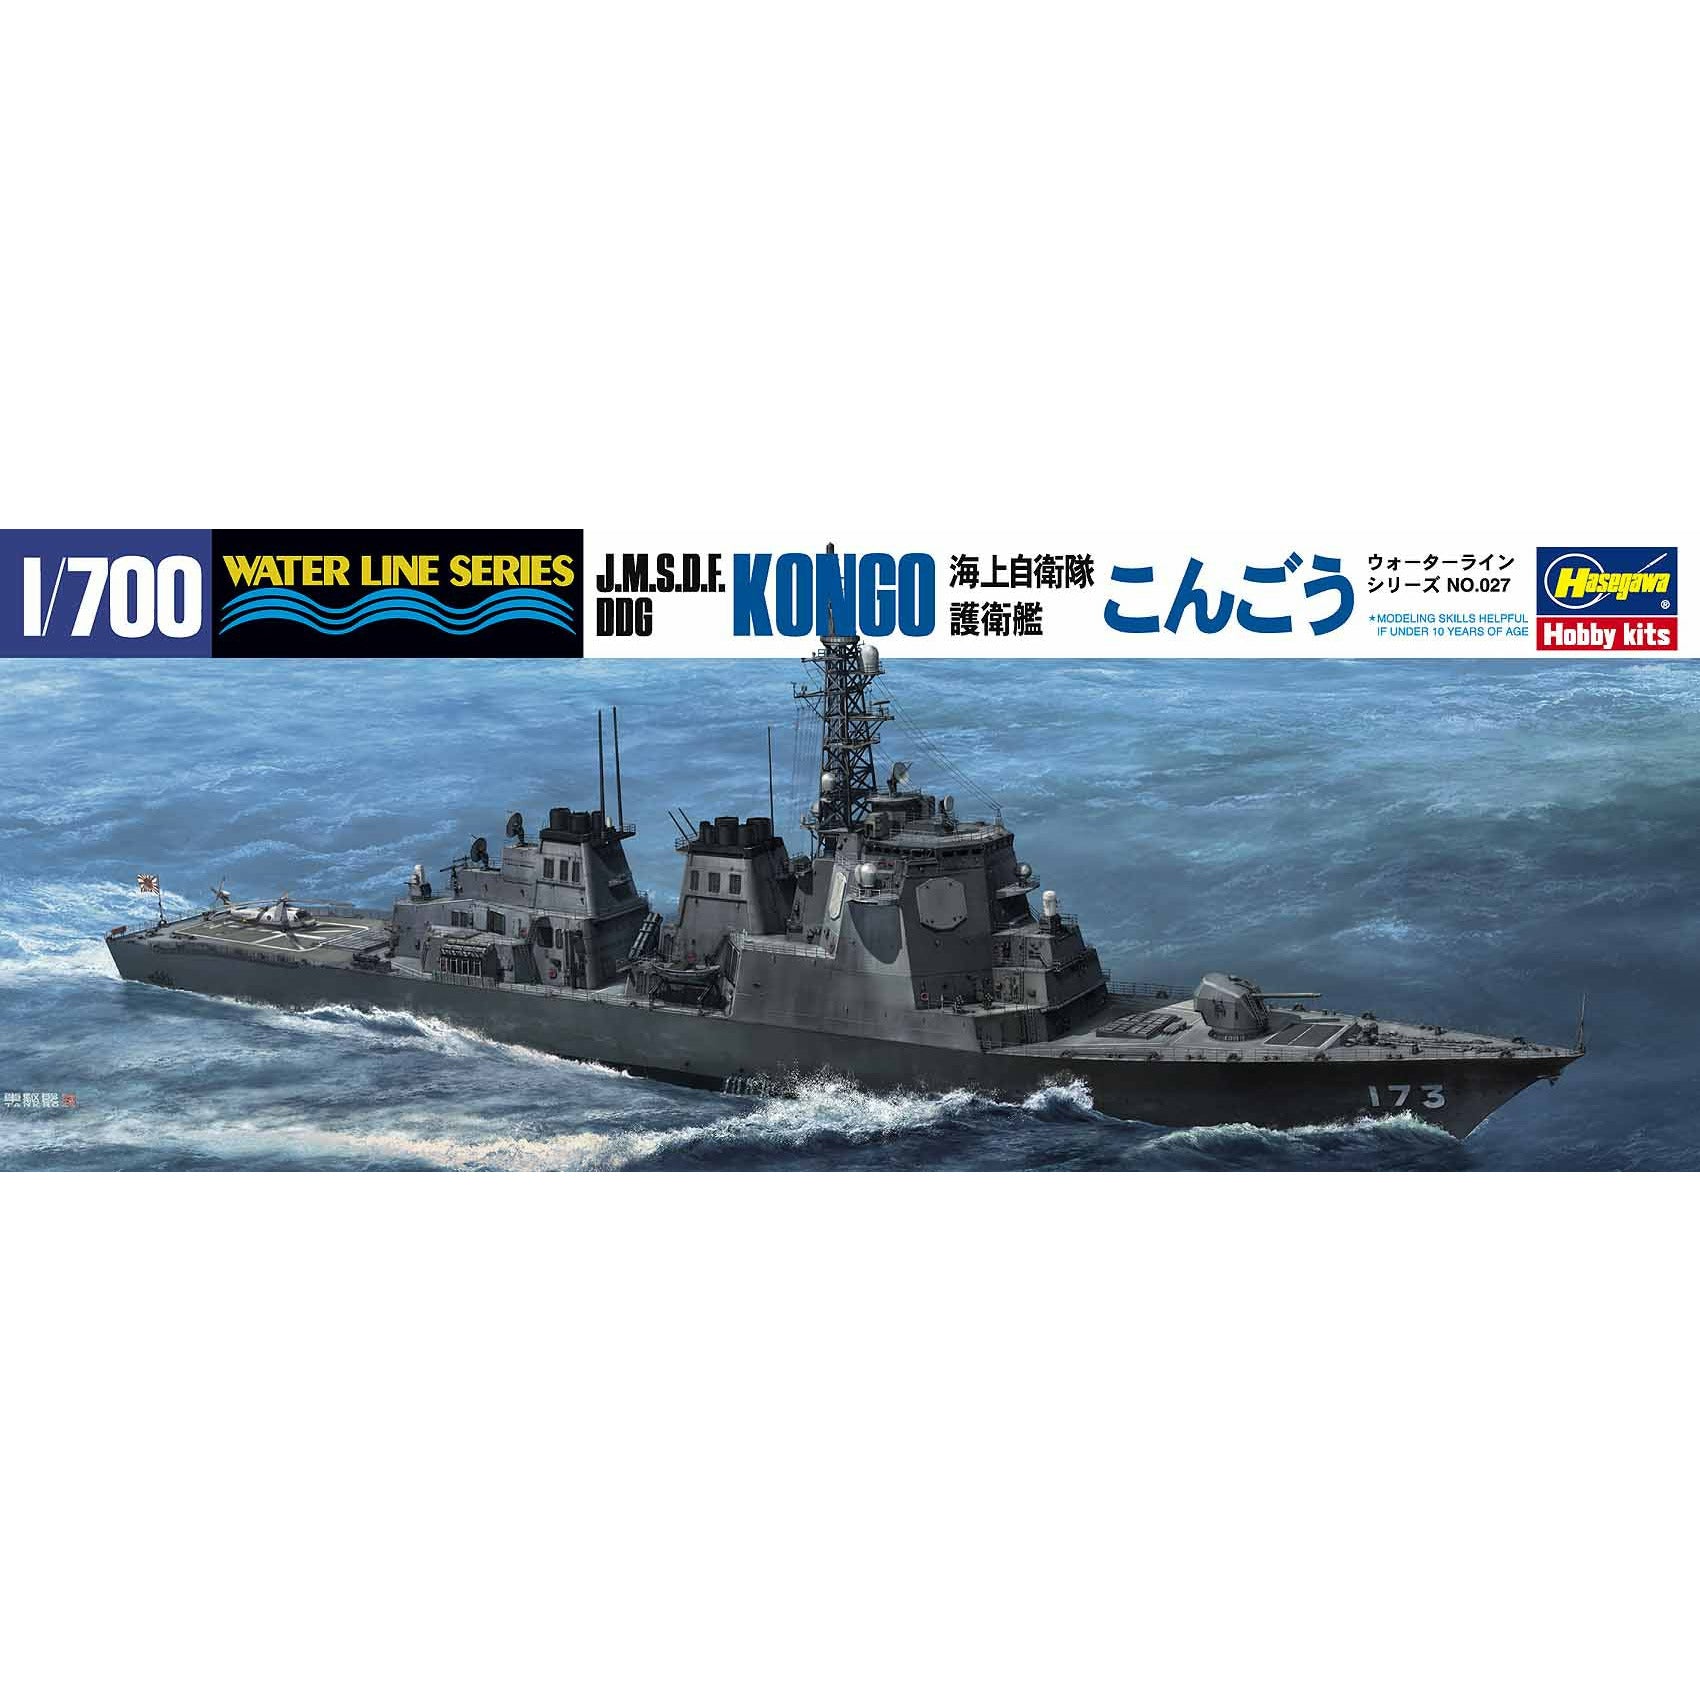 J.M.S.D.F. Ddg Kongo 1/700 Model Ship Kit #49027 by Hasegawa